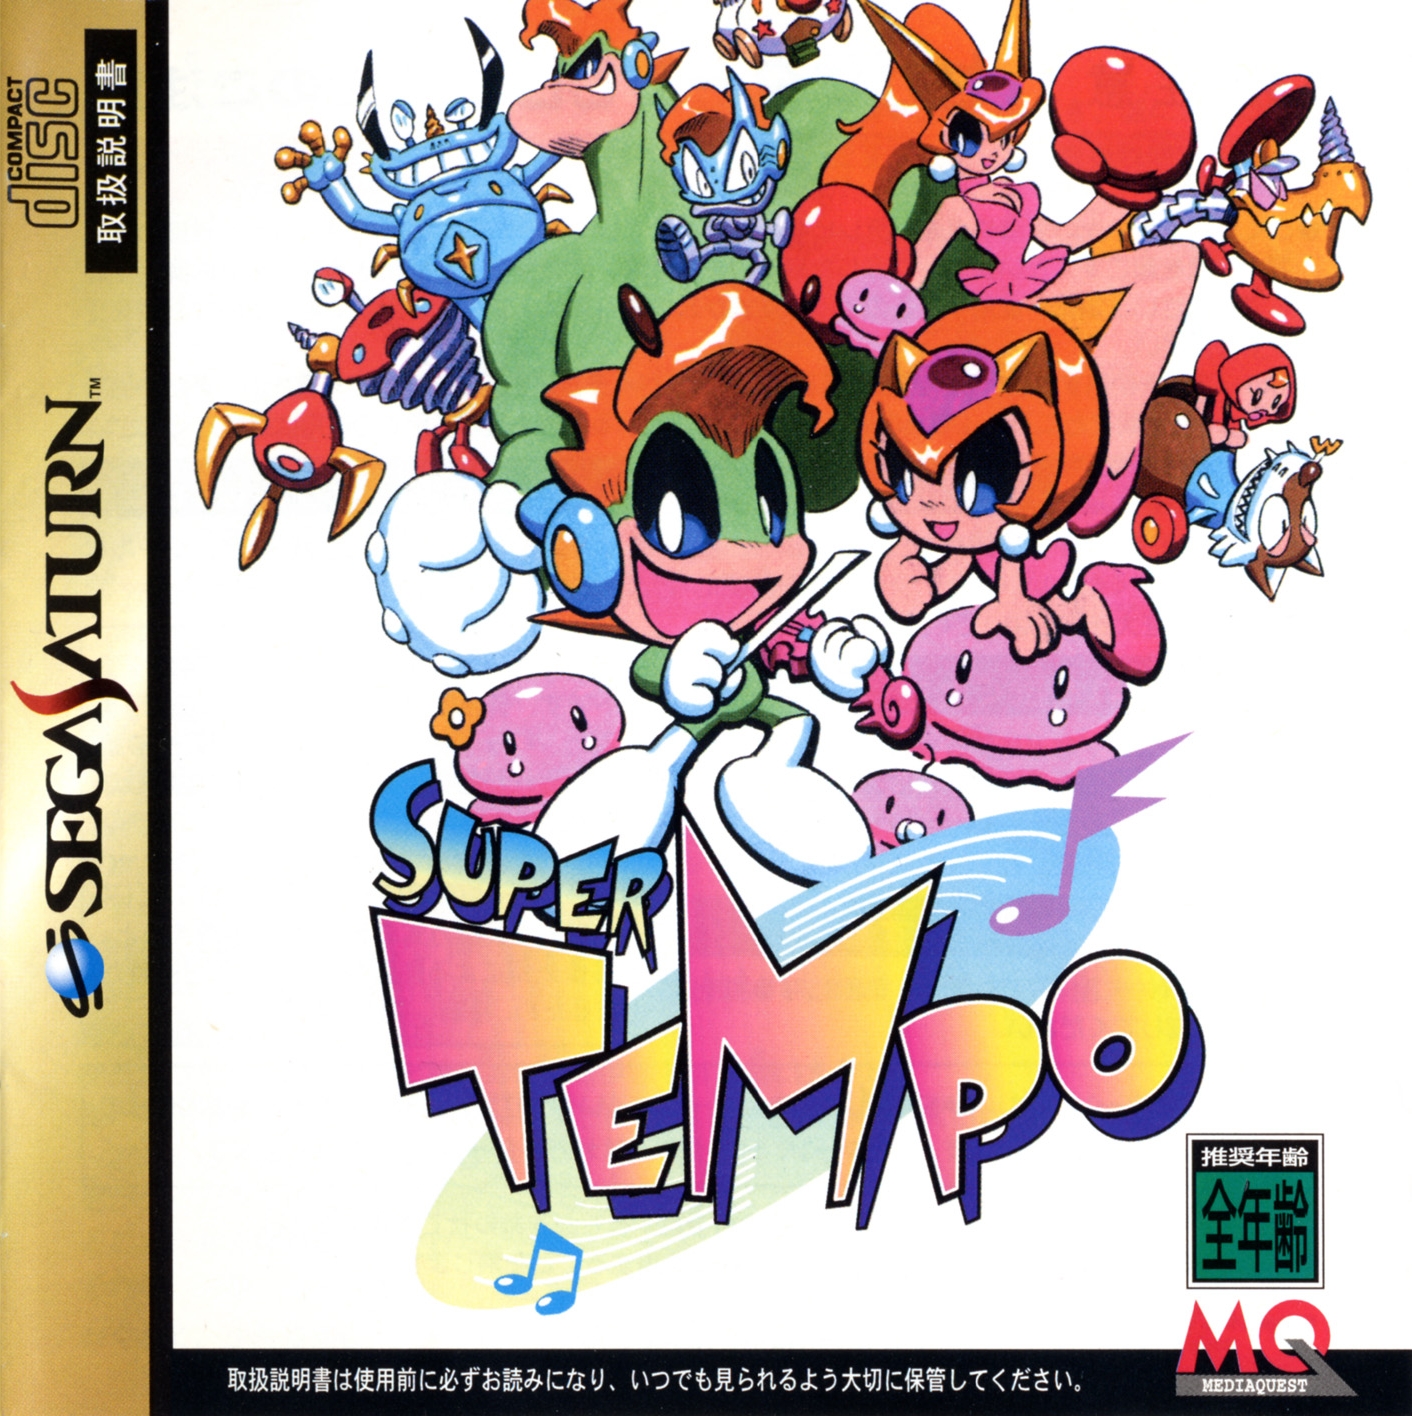 jaquette du jeu vidéo Super Tempo